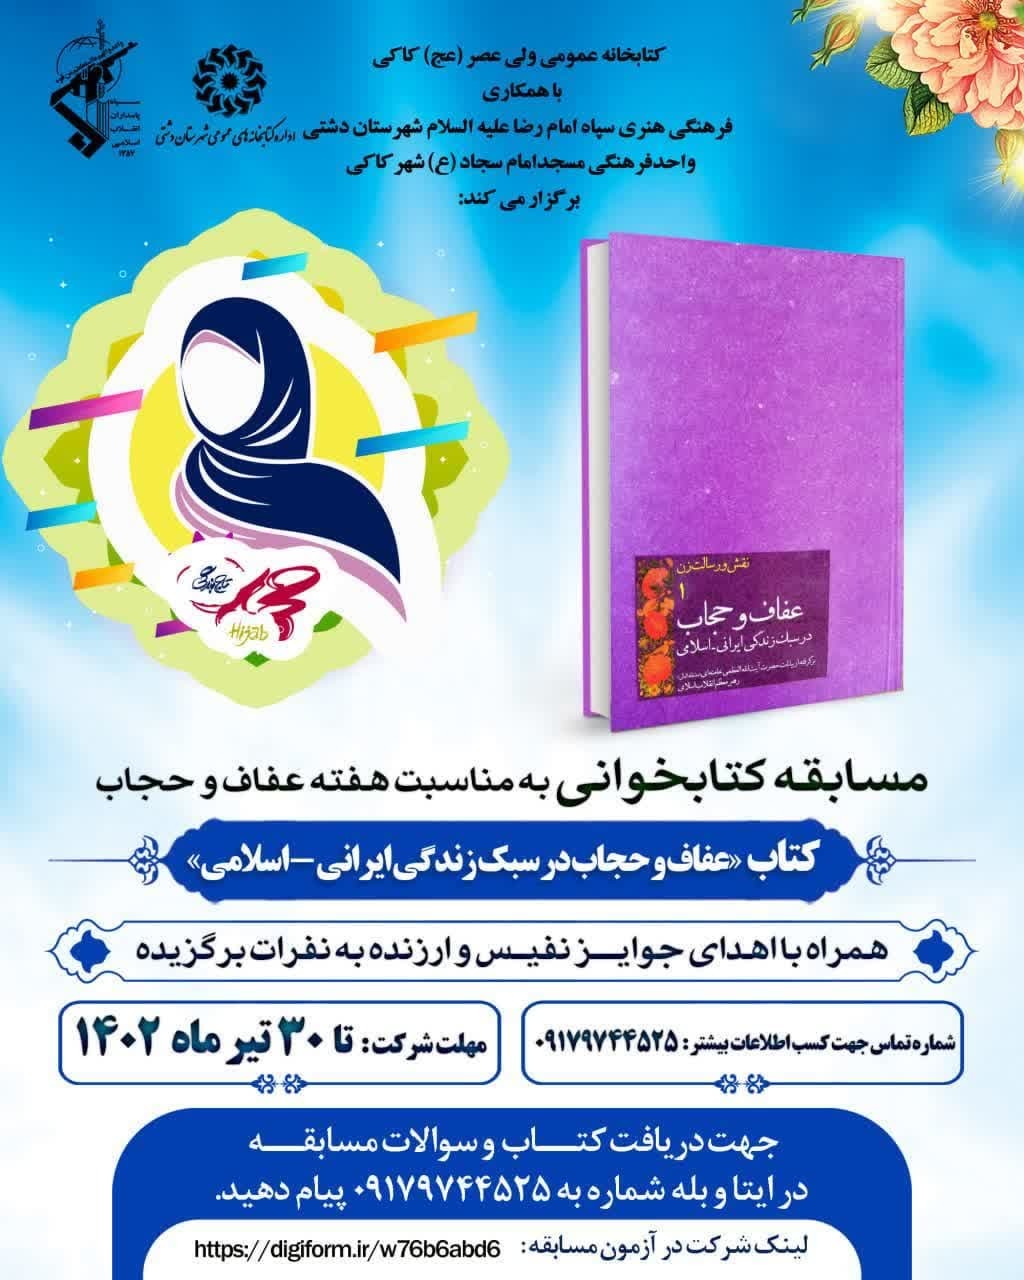 مسابقه کتاب «عفاف وحجاب در سبک زندگی ایرانی،اسلامی» در دشتی برگزار می شود